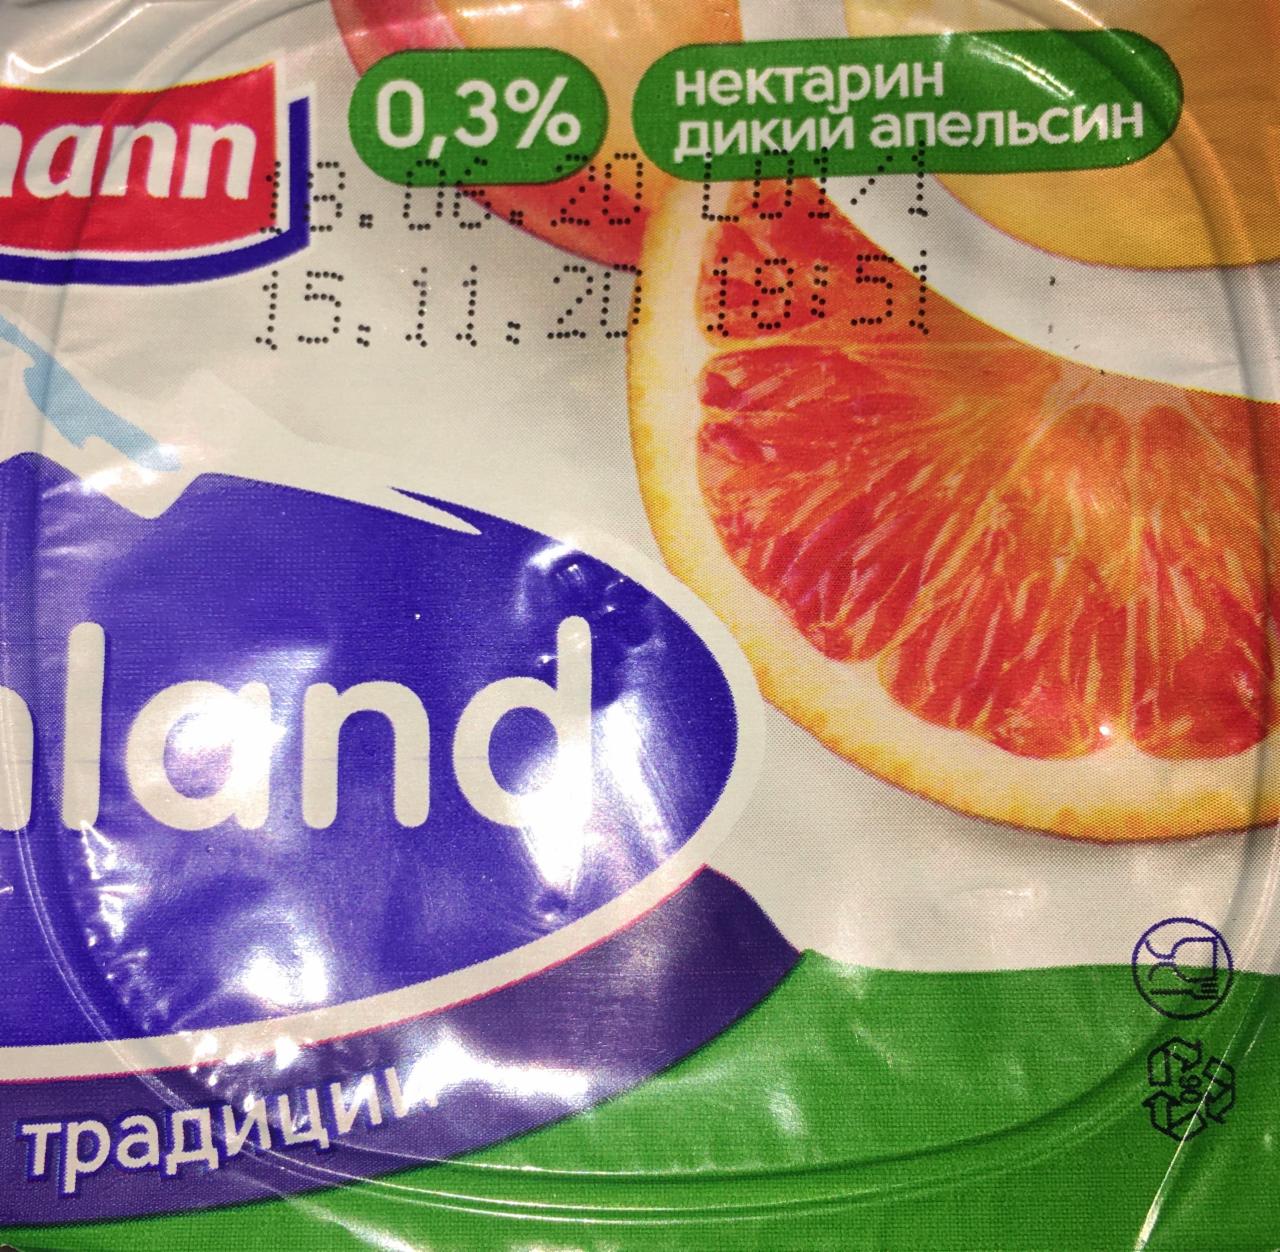 Фото - йогурт нектарин-дикий апельсин 0,3% Alpenland Ehrmann